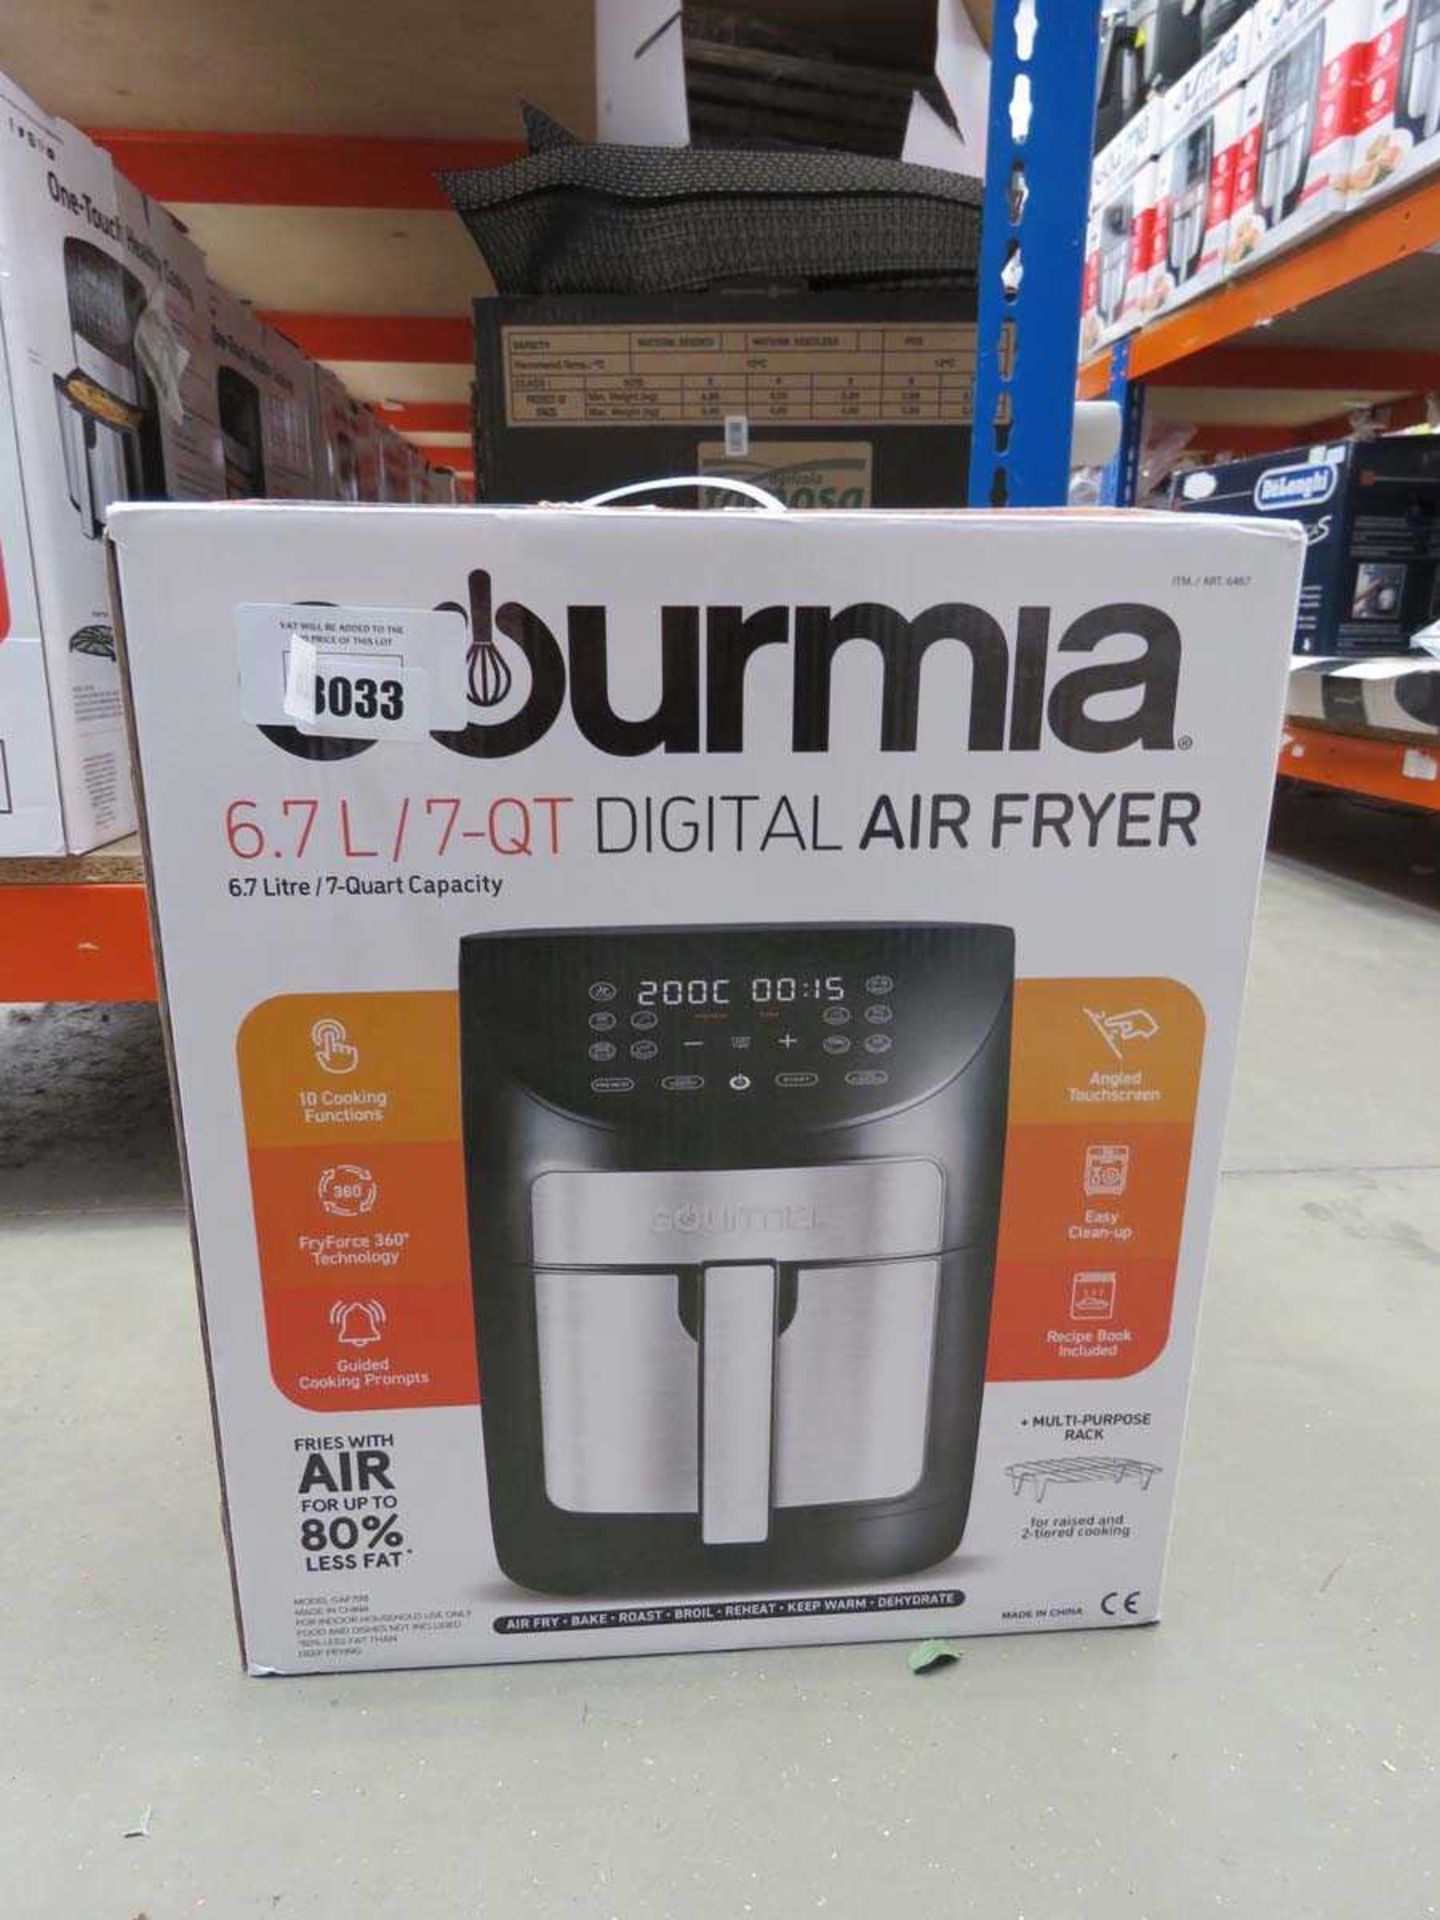 Gourmia digital air fryer (wrong box)